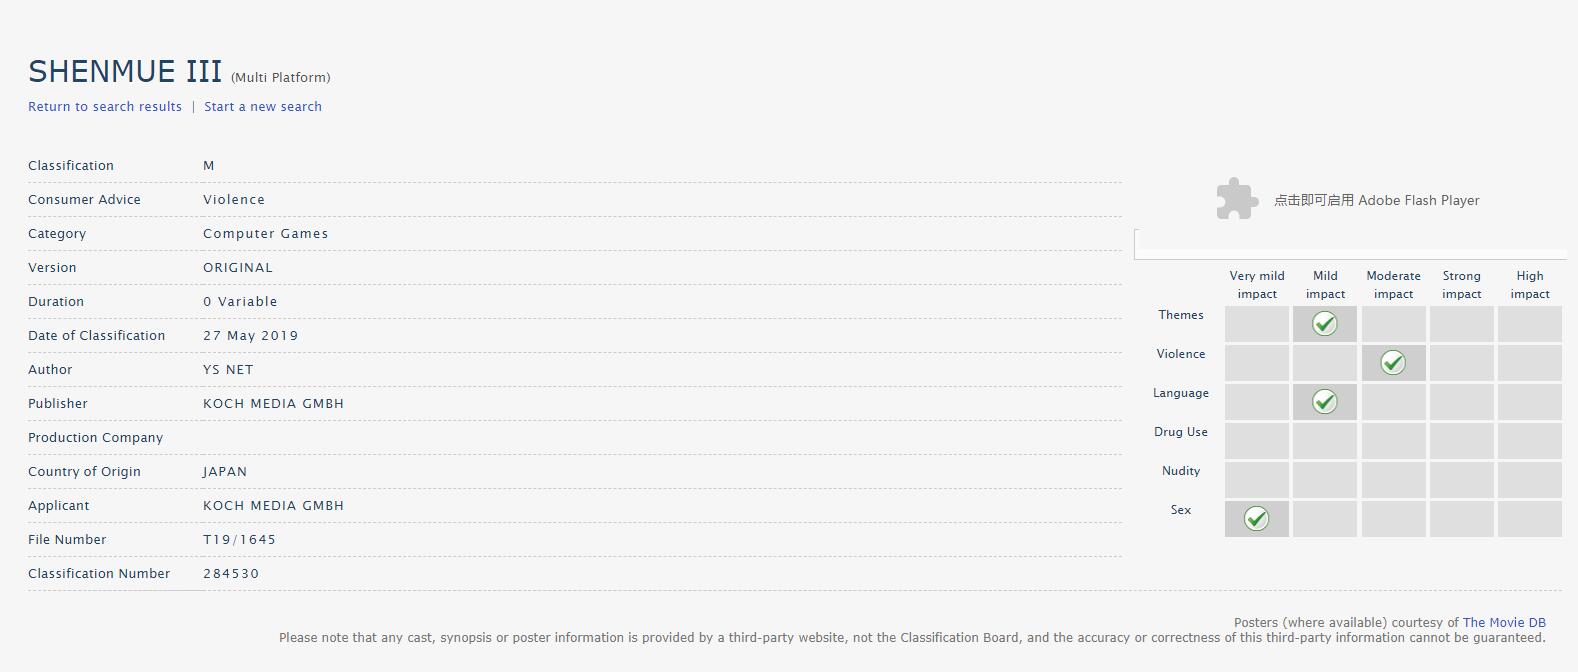 《莎木3》通過澳大利亞網站評級 獲評“M”成人級